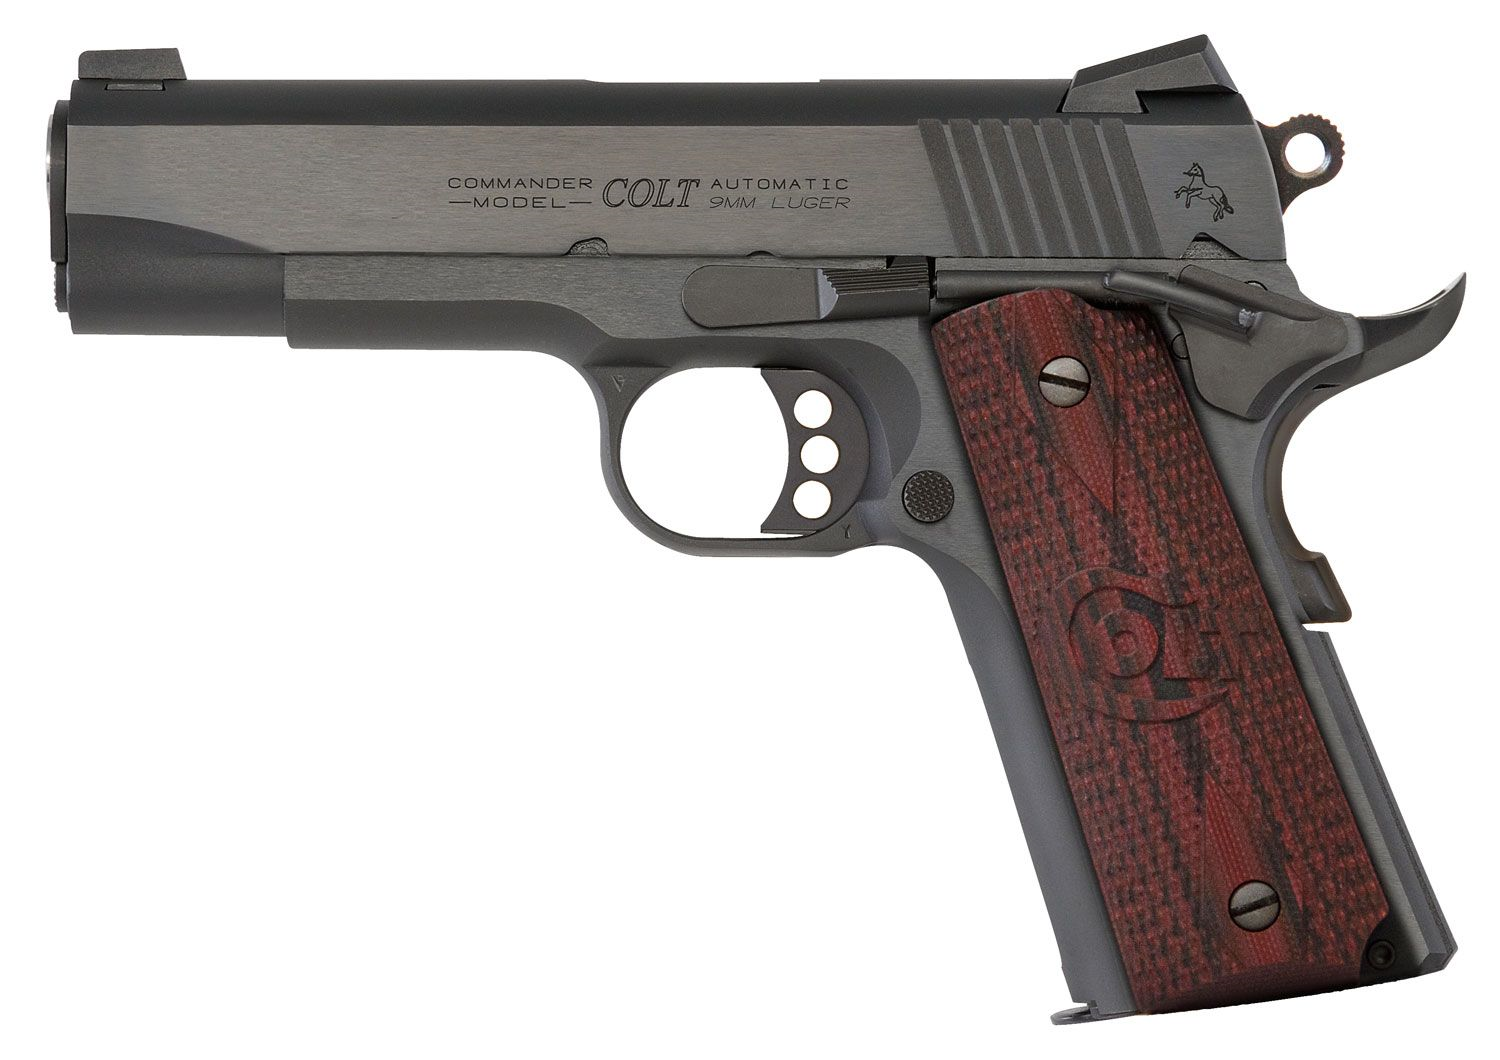 CLT COMBAT C 9MM 4.25 BLU 9RD - Handguns